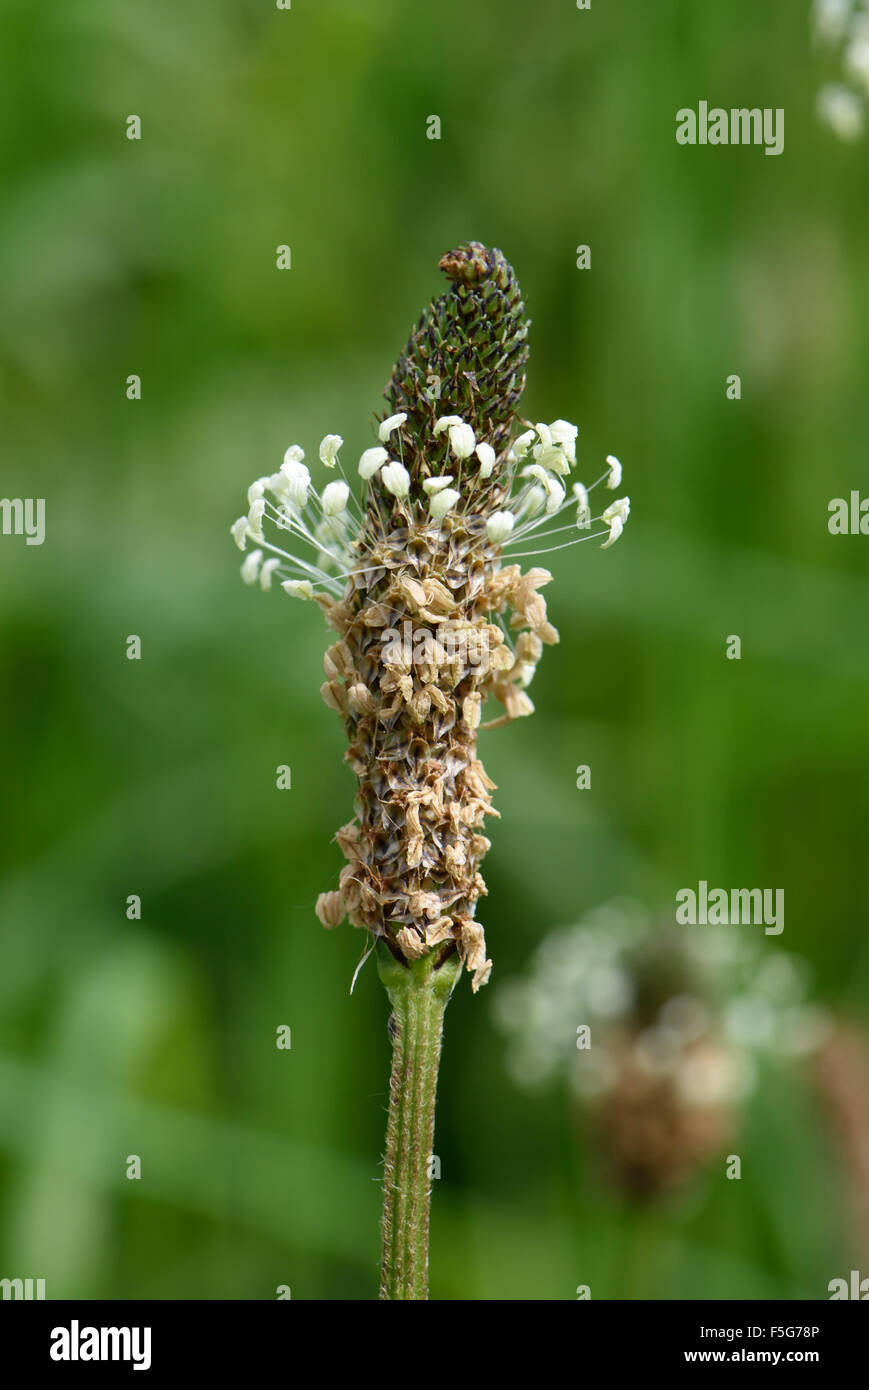 Blütenrispe oder Blütenstand einer hoary Wegerich, Plantago Media, Antheren sterben an der Basis, Juni Stockfoto